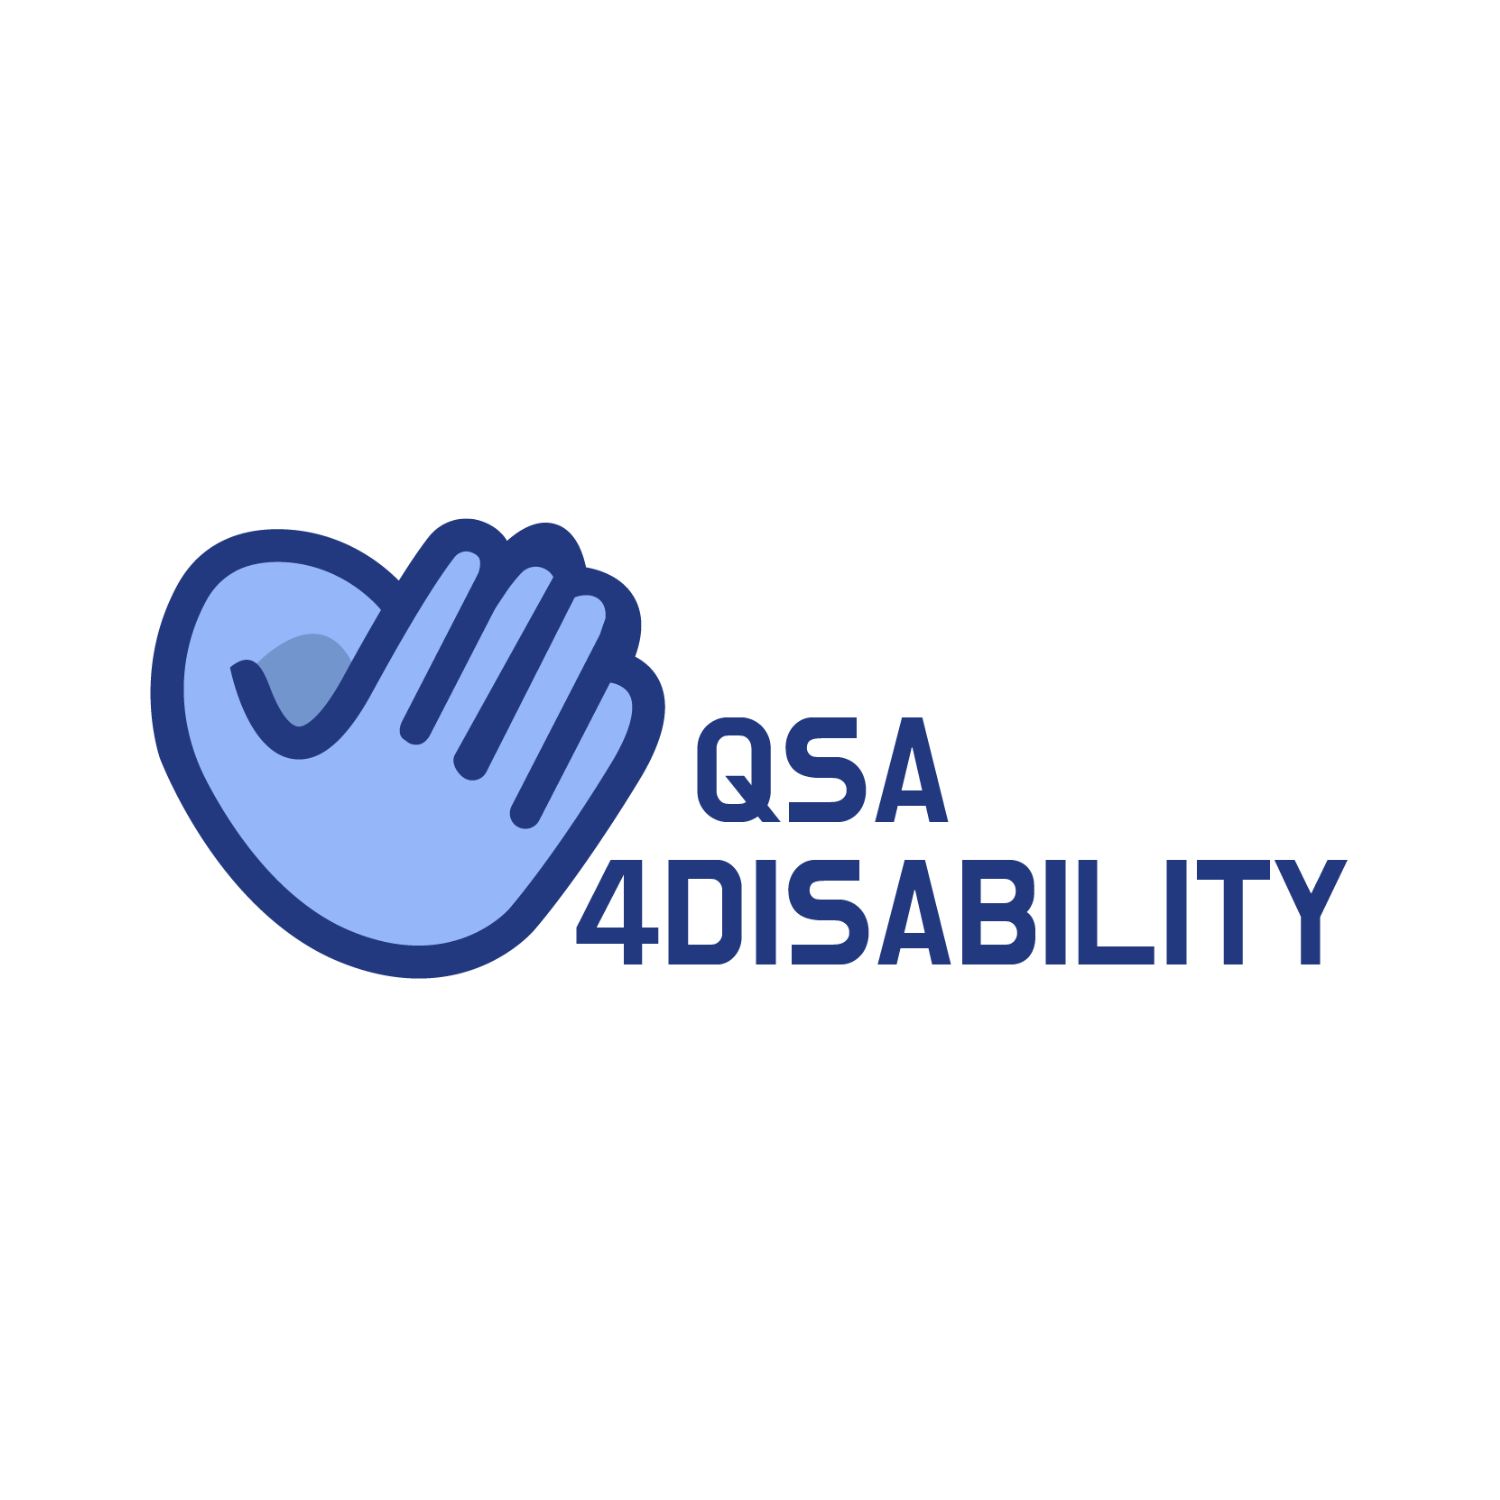 QSA4Disability – Създаване на нов стандарт за дистанционна форма на чиракуване за хора с увреждания